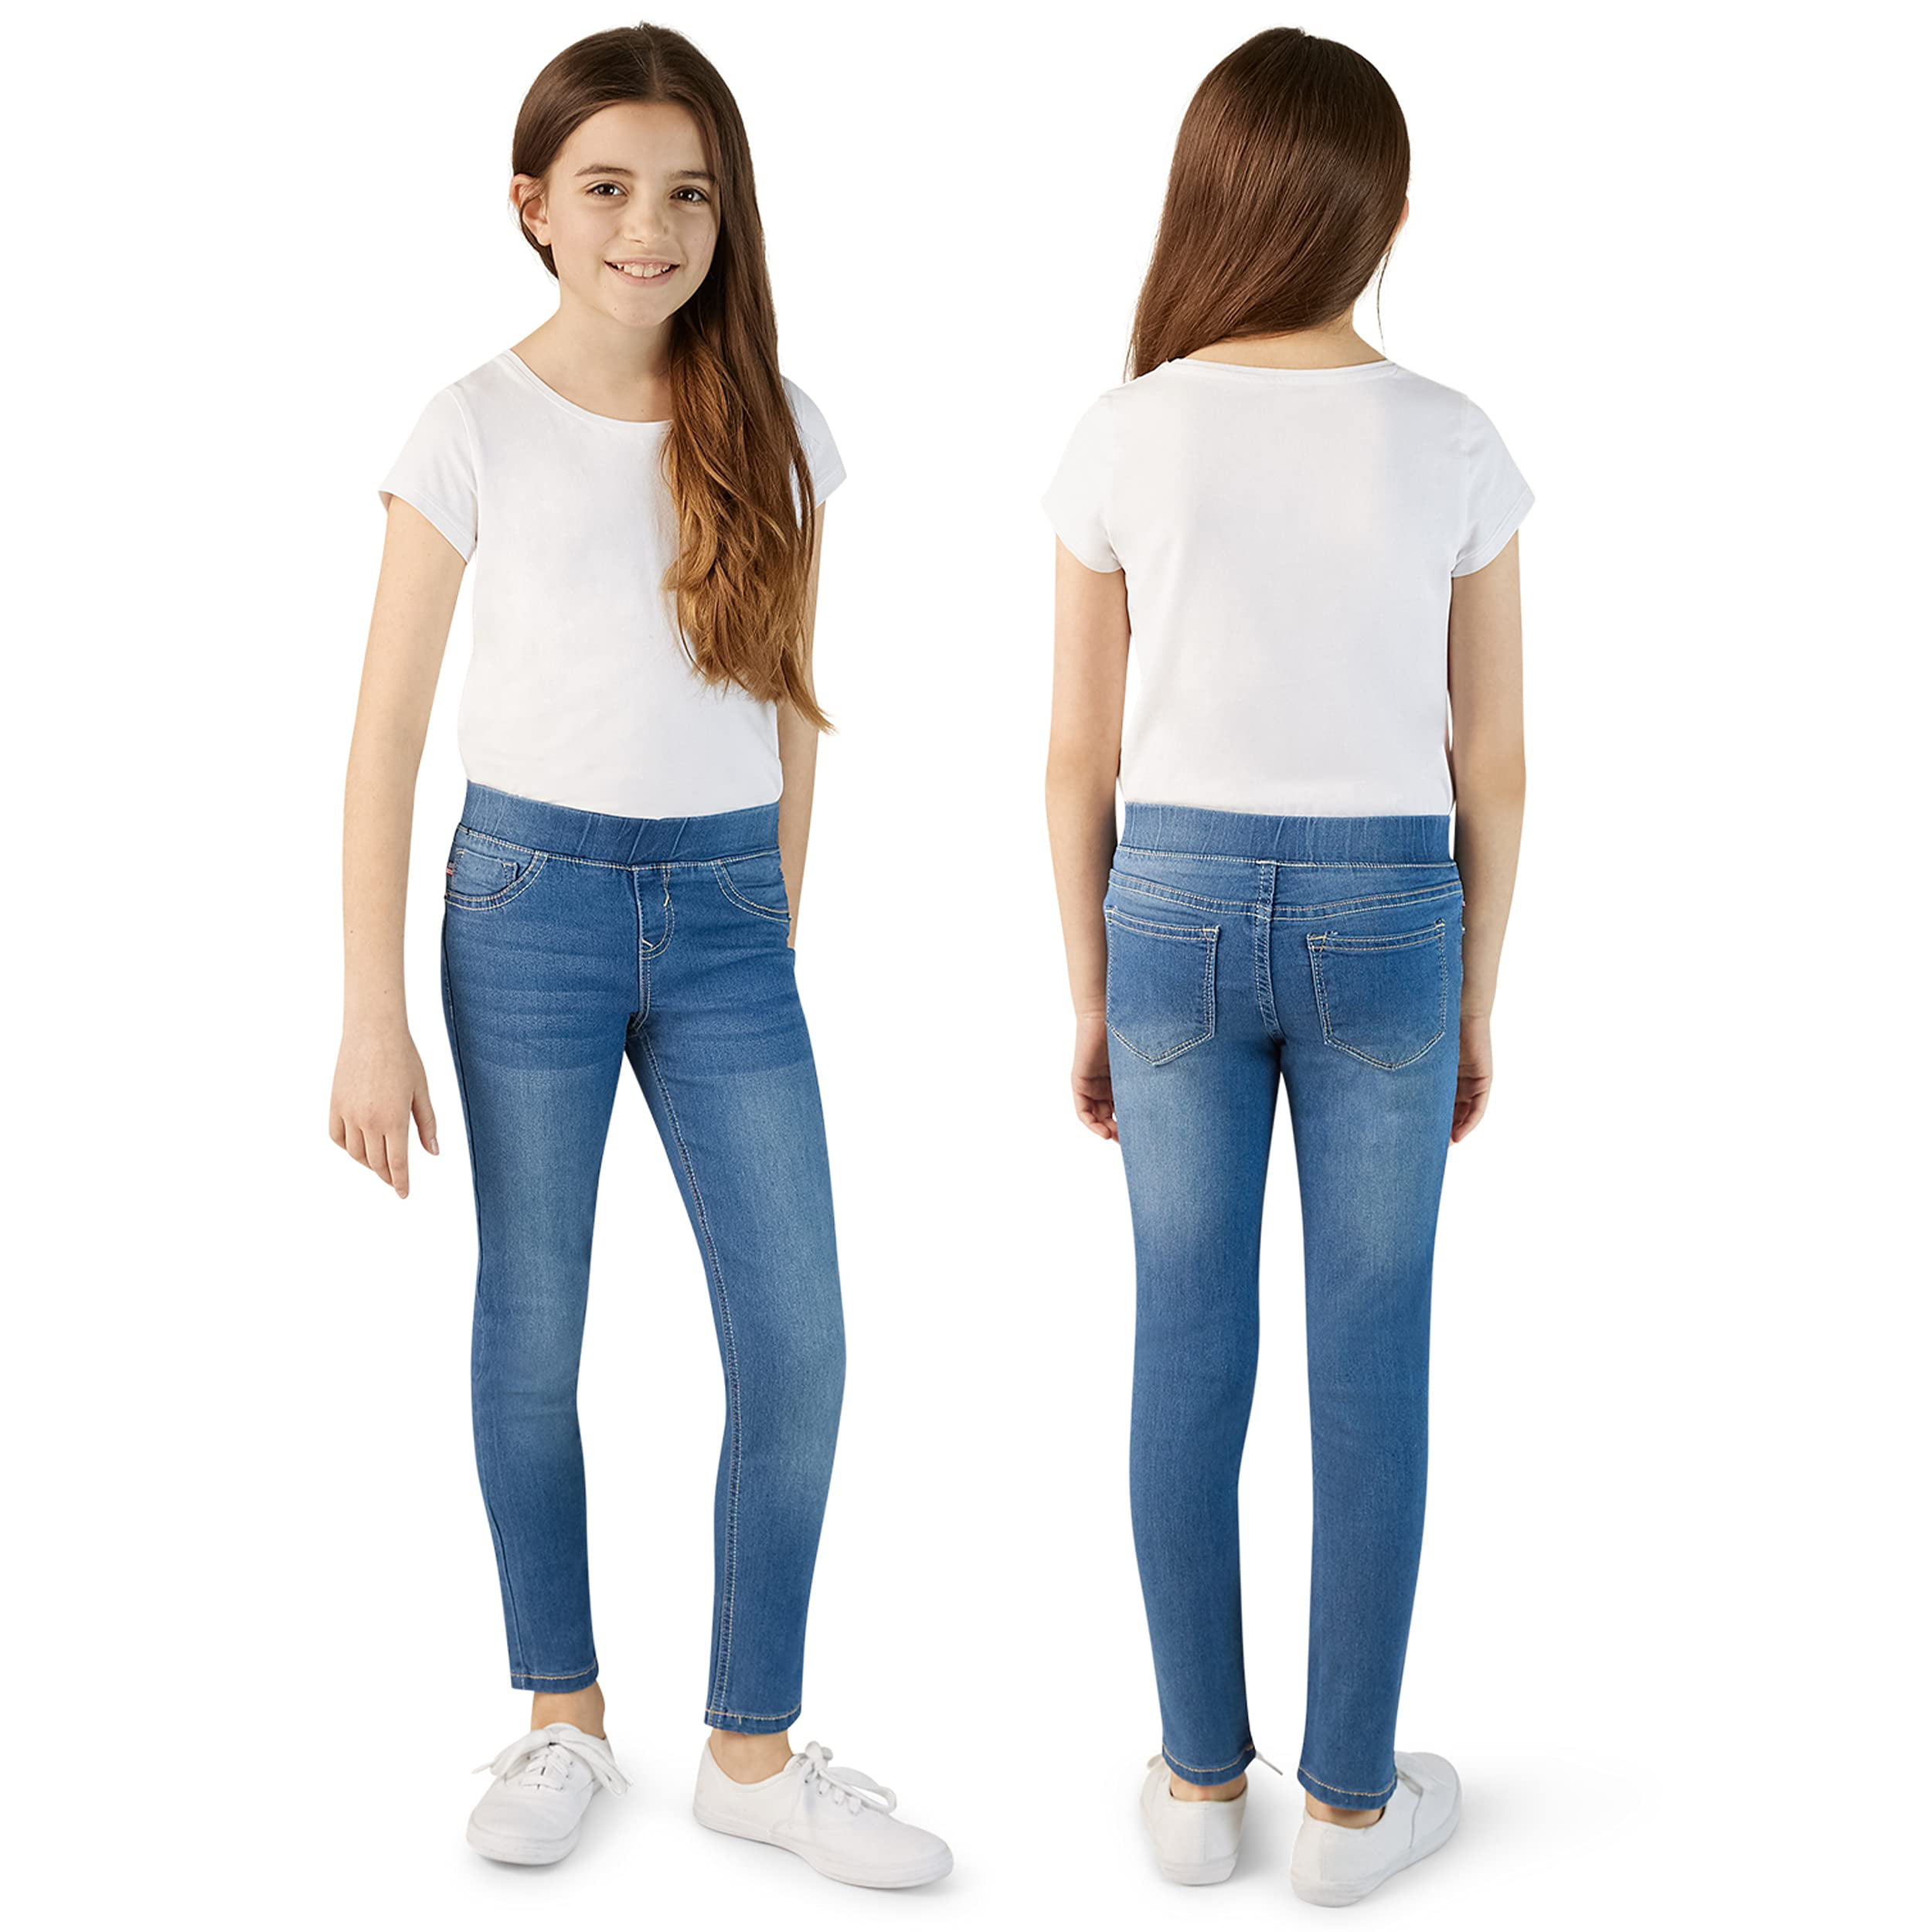 VIGOSS Pull On Skinny Jeans for Girls 